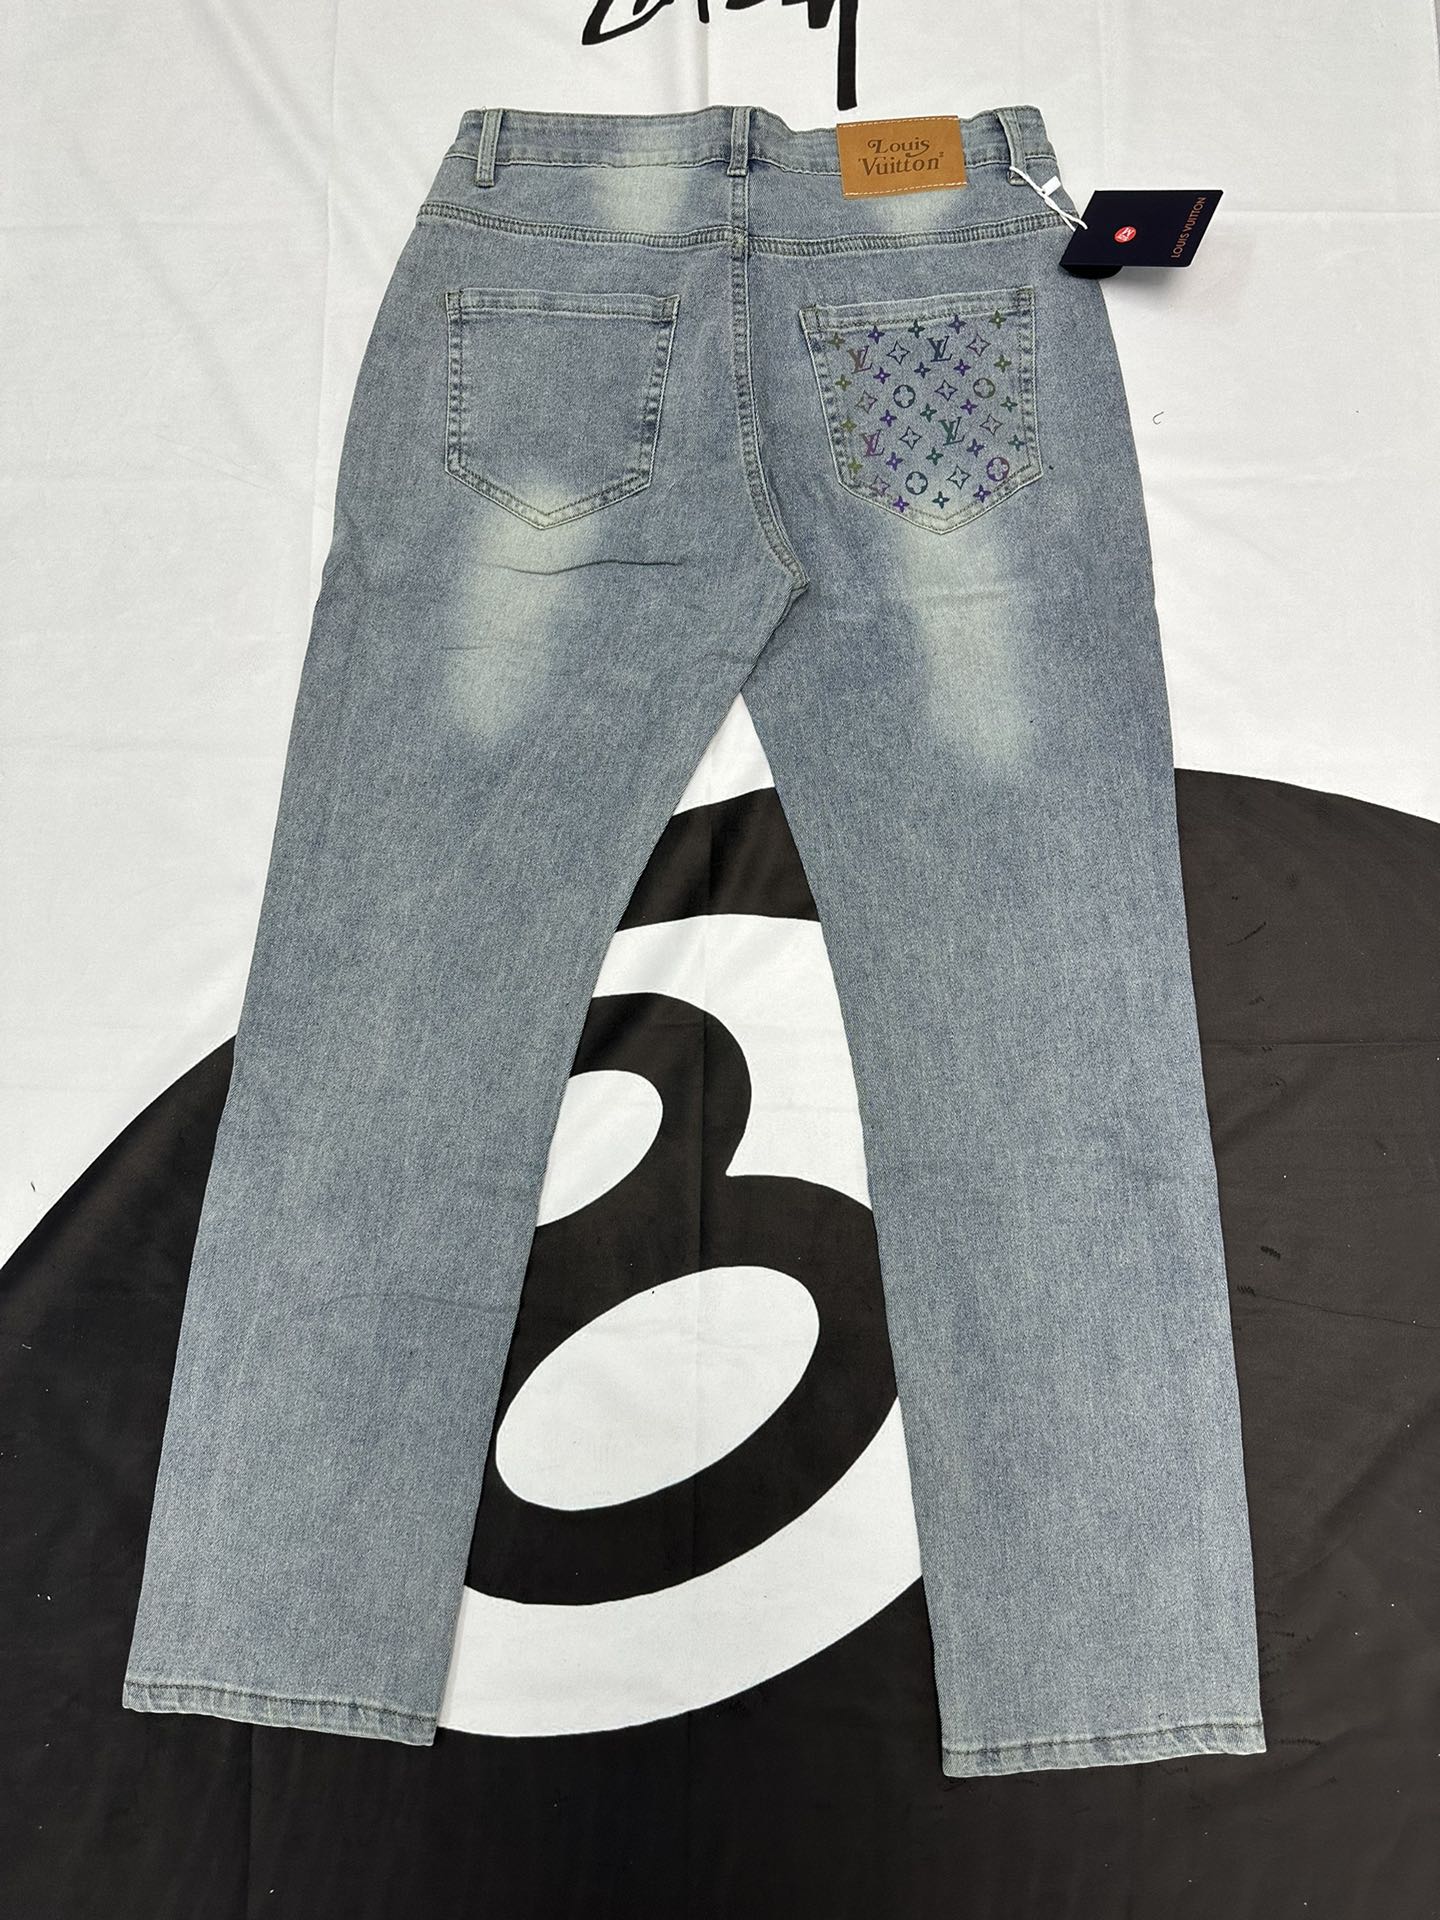 Louis Vuitton Clothing Jeans Pants & Trousers Blue Cotton Denim